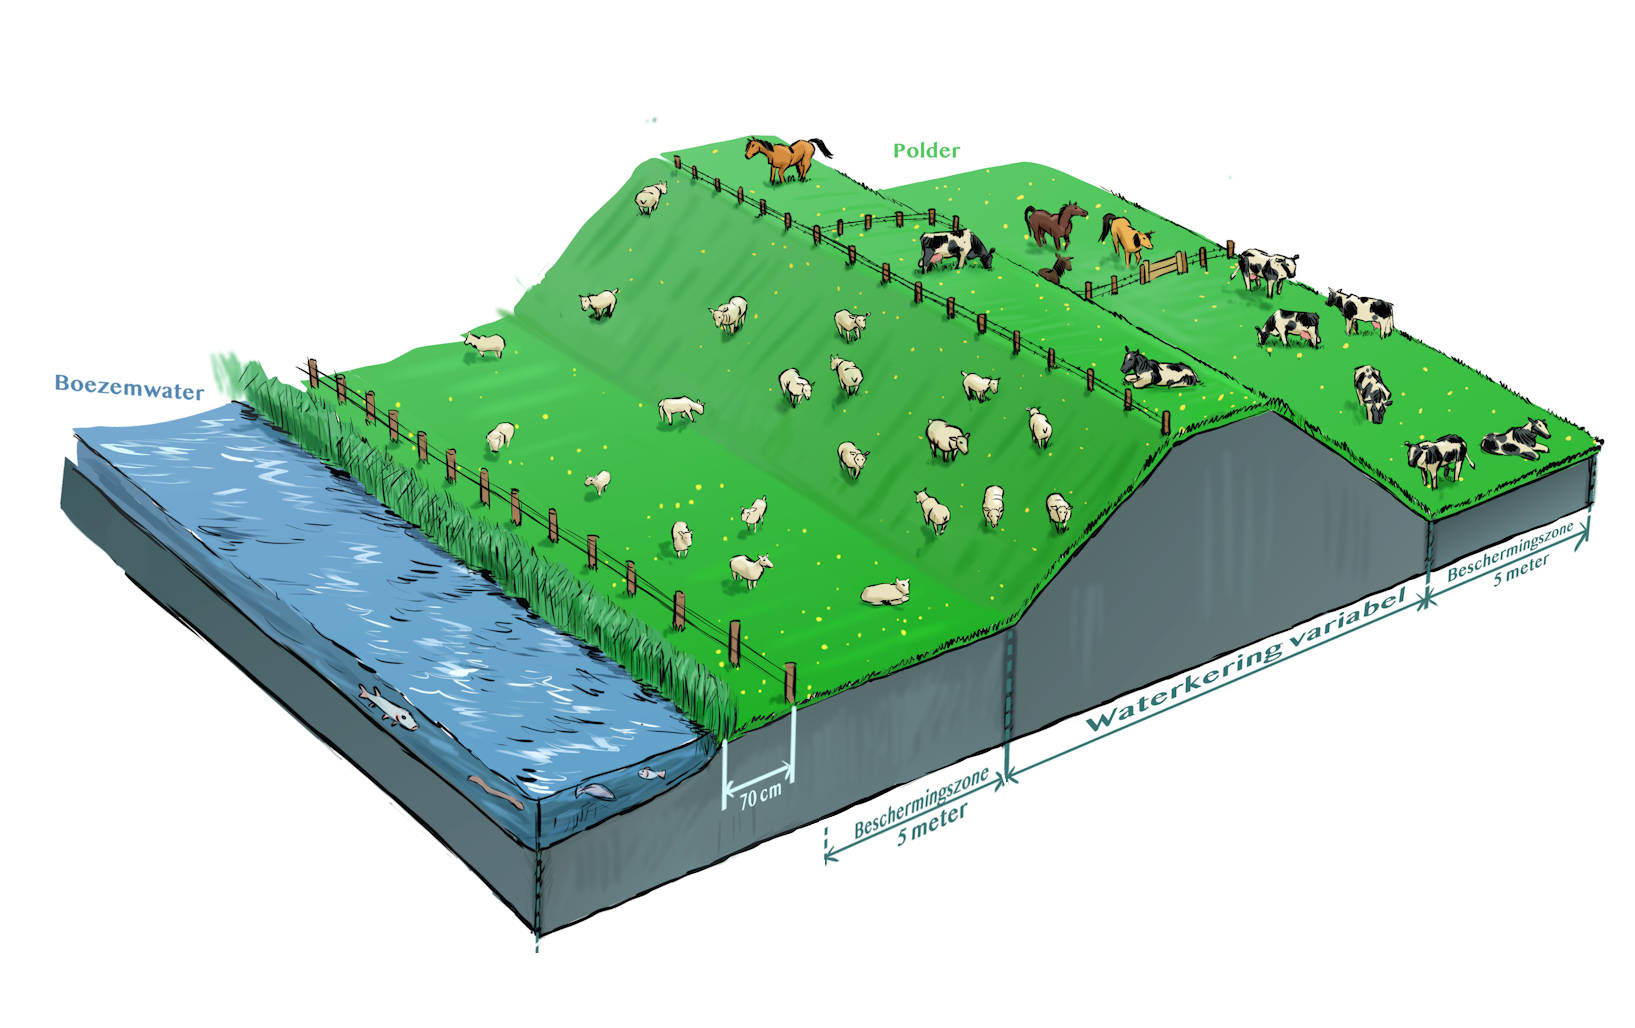 waterschapsverordening - waterkering, dieren houden, boezemwater (voorland)